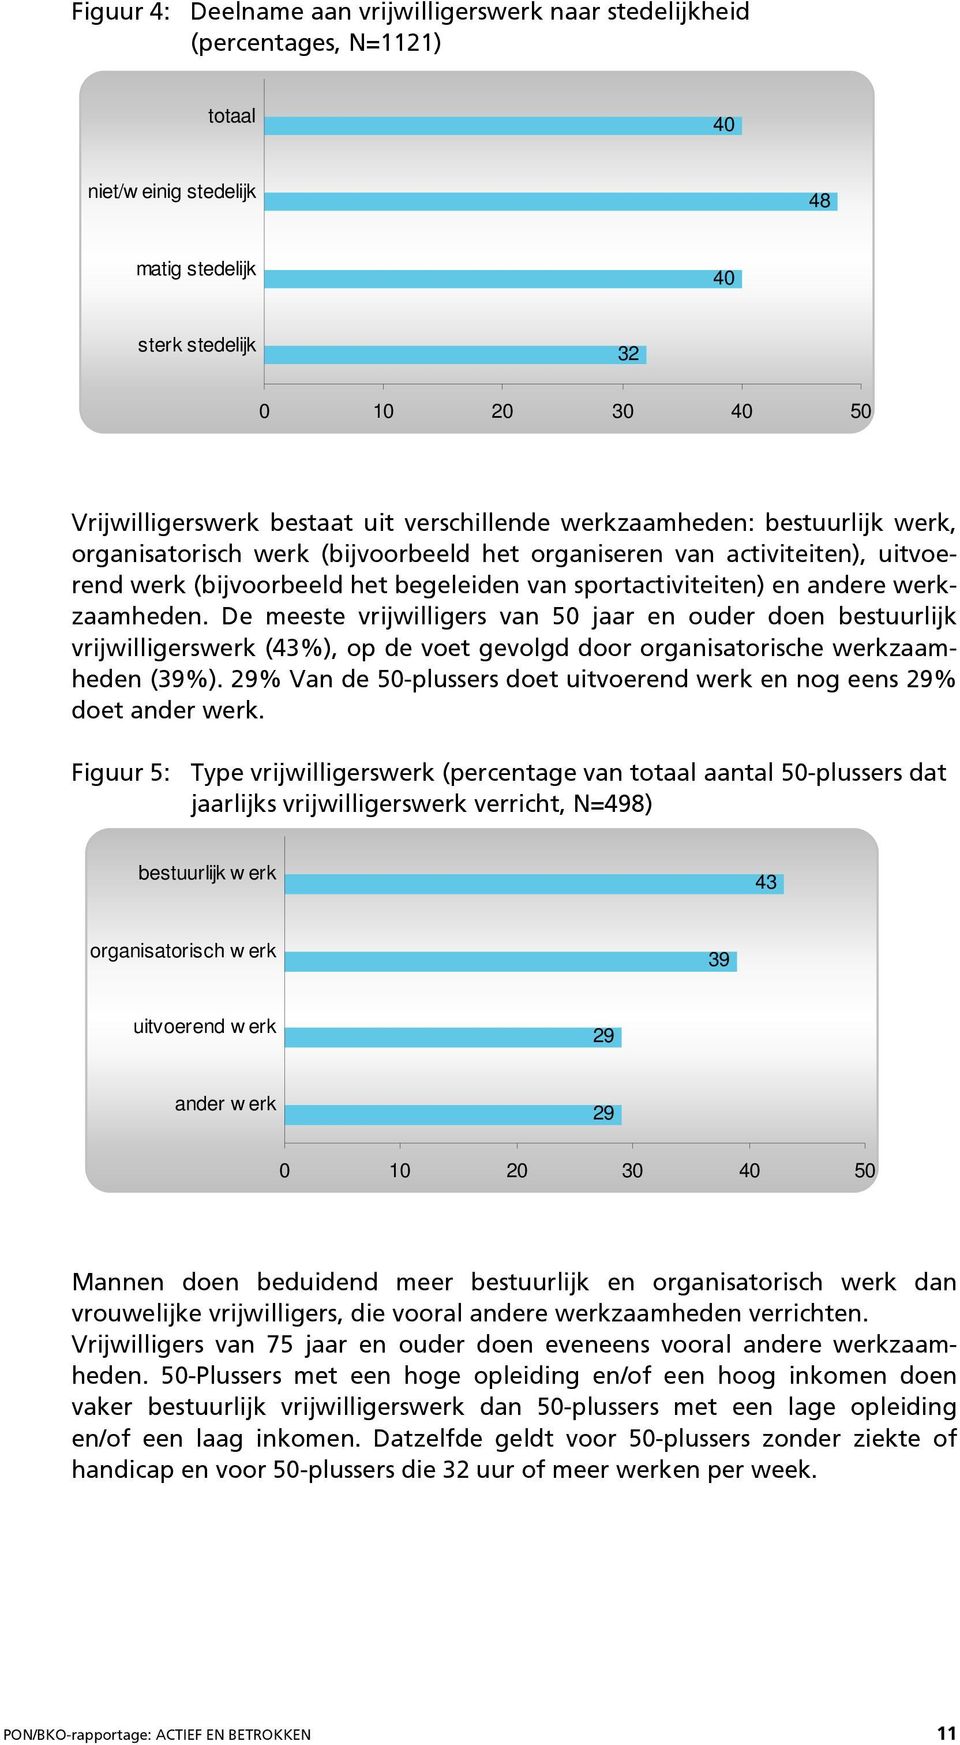 werkzaamheden. De meeste vrijwilligers van 50 jaar en ouder doen bestuurlijk vrijwilligerswerk (43%), op de voet gevolgd door organisatorische werkzaamheden (39%).